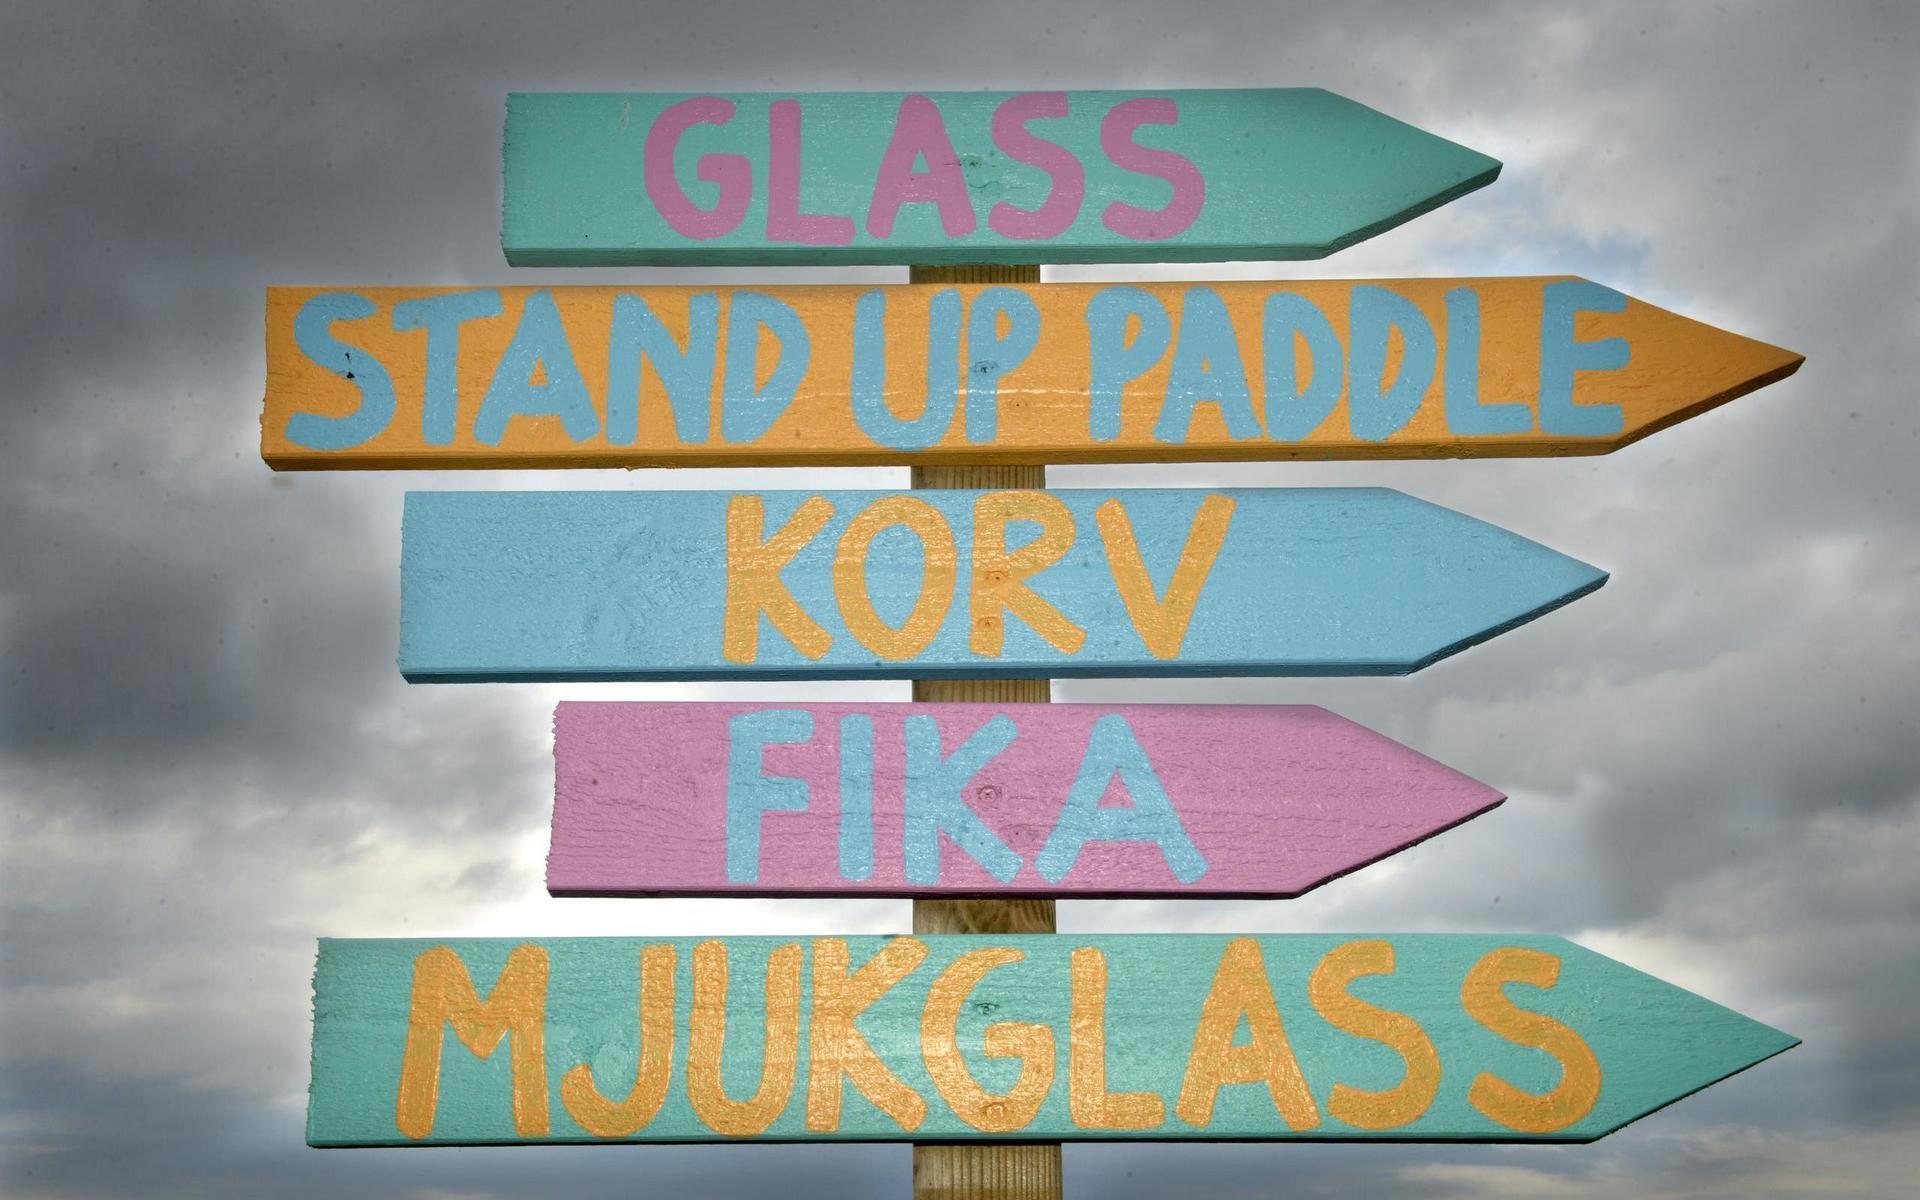 På Stråvalla strand finns fika och stand up padel. 